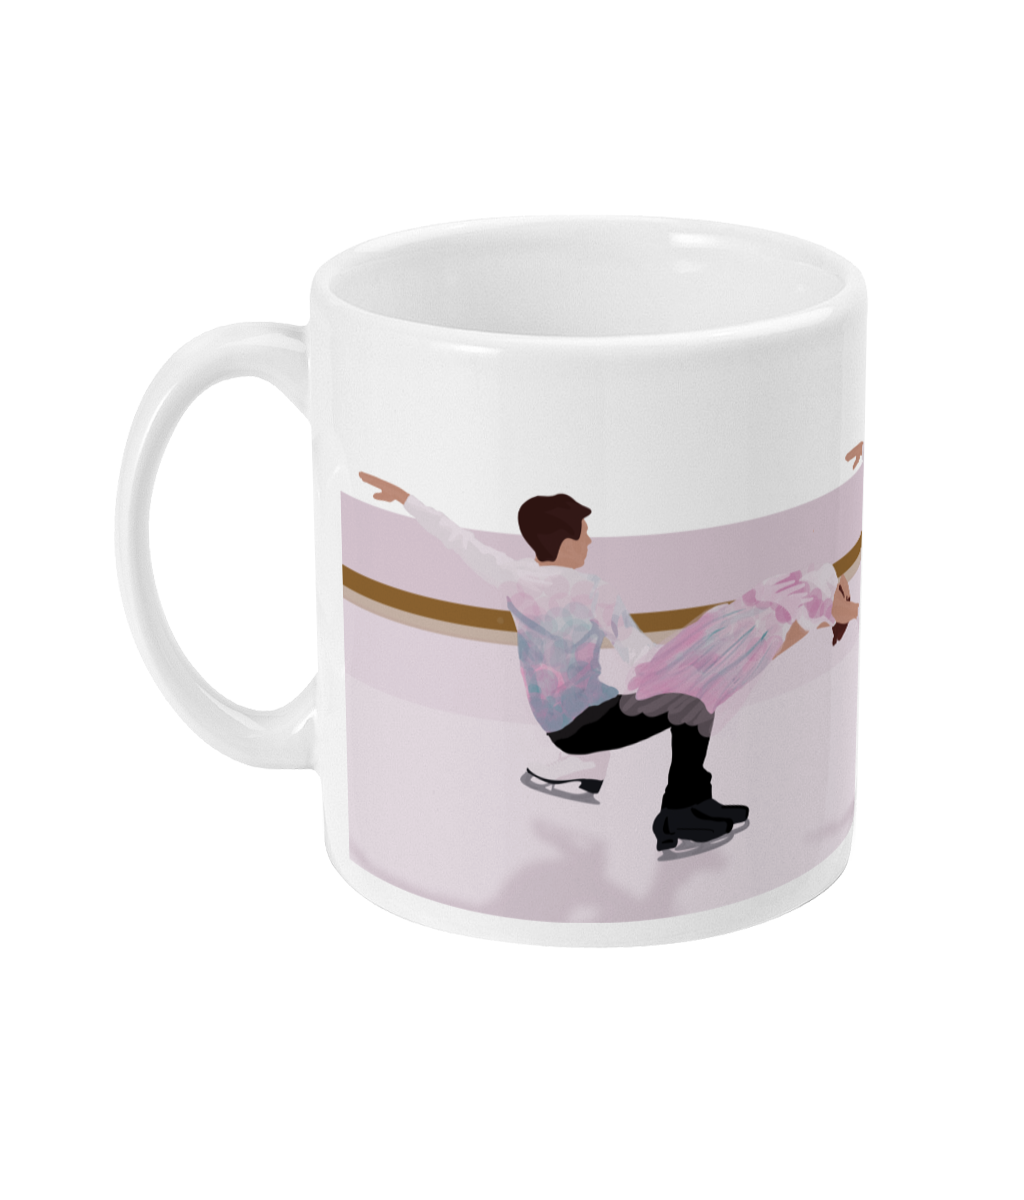 Skating cup or mug "Skater couple" - Customizable